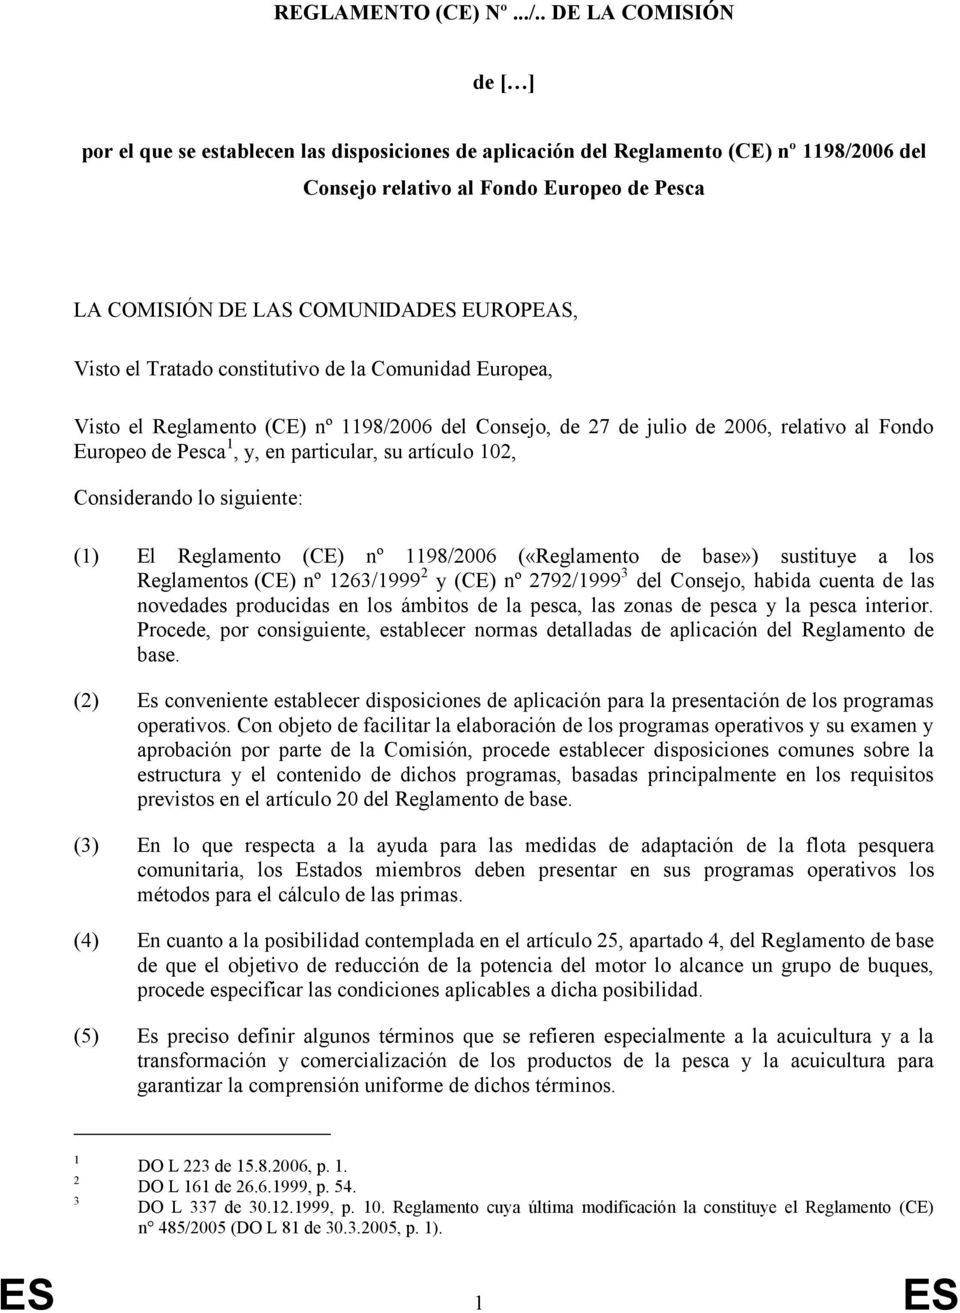 EUROPEAS, Visto el Tratado constitutivo de la Comunidad Europea, Visto el Reglamento (CE) nº 1198/2006 del Consejo, de 27 de julio de 2006, relativo al Fondo Europeo de Pesca 1, y, en particular, su